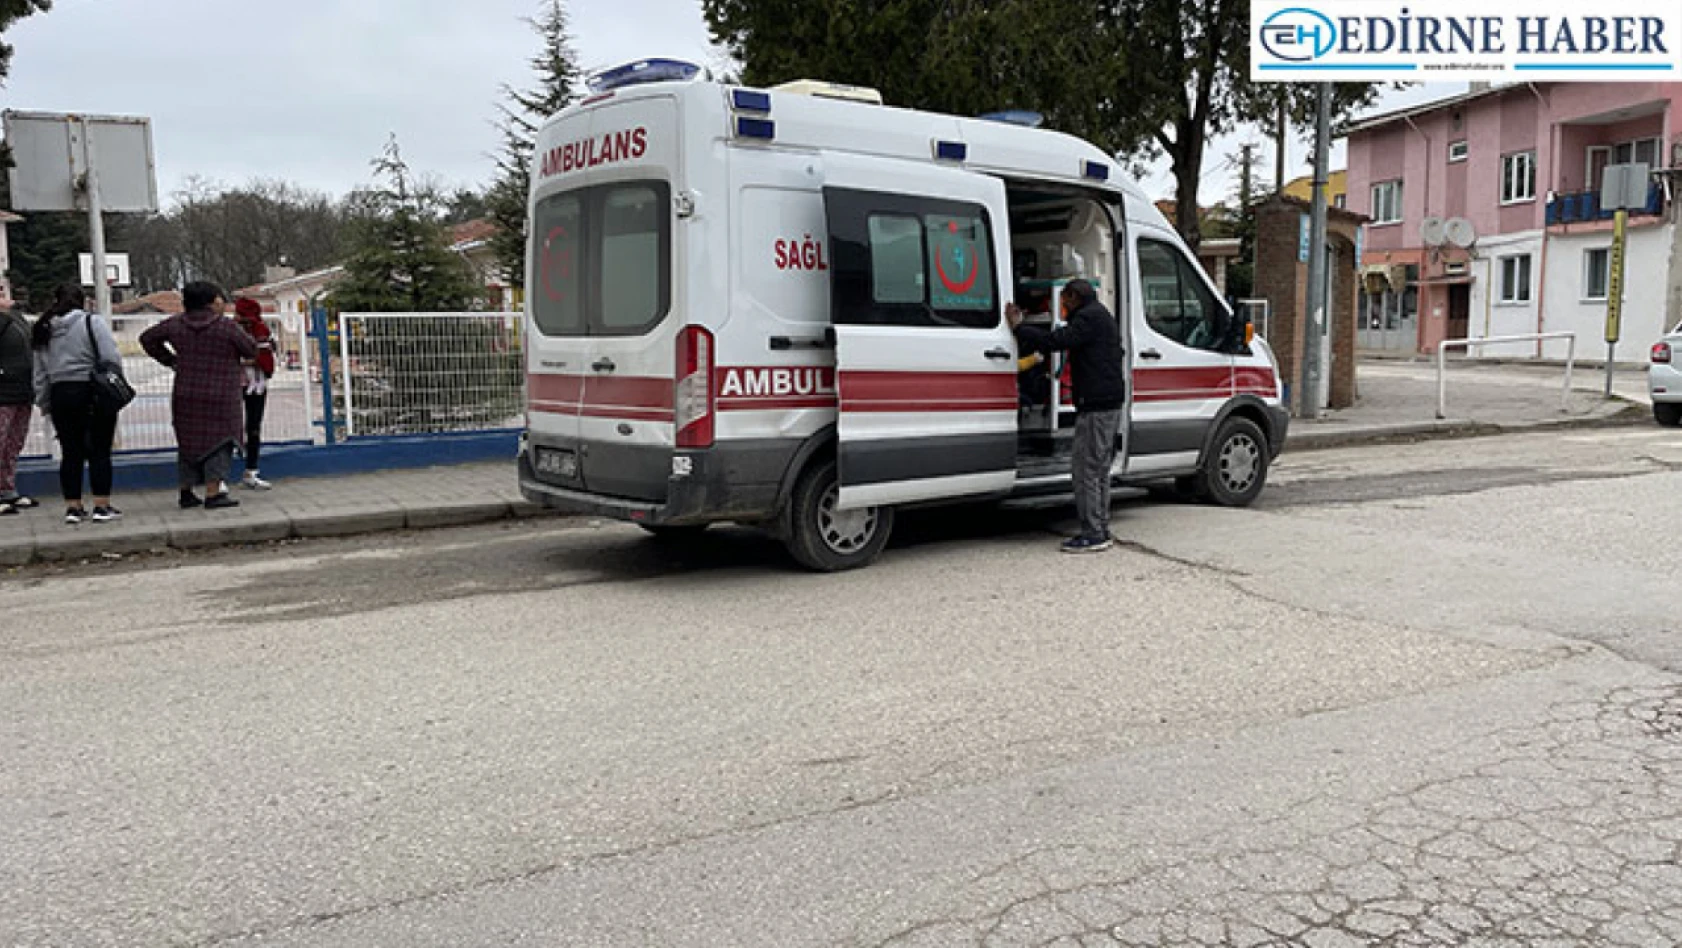 Edirne'de eşini bıçakla yaralayan şüpheli gözaltına alındı